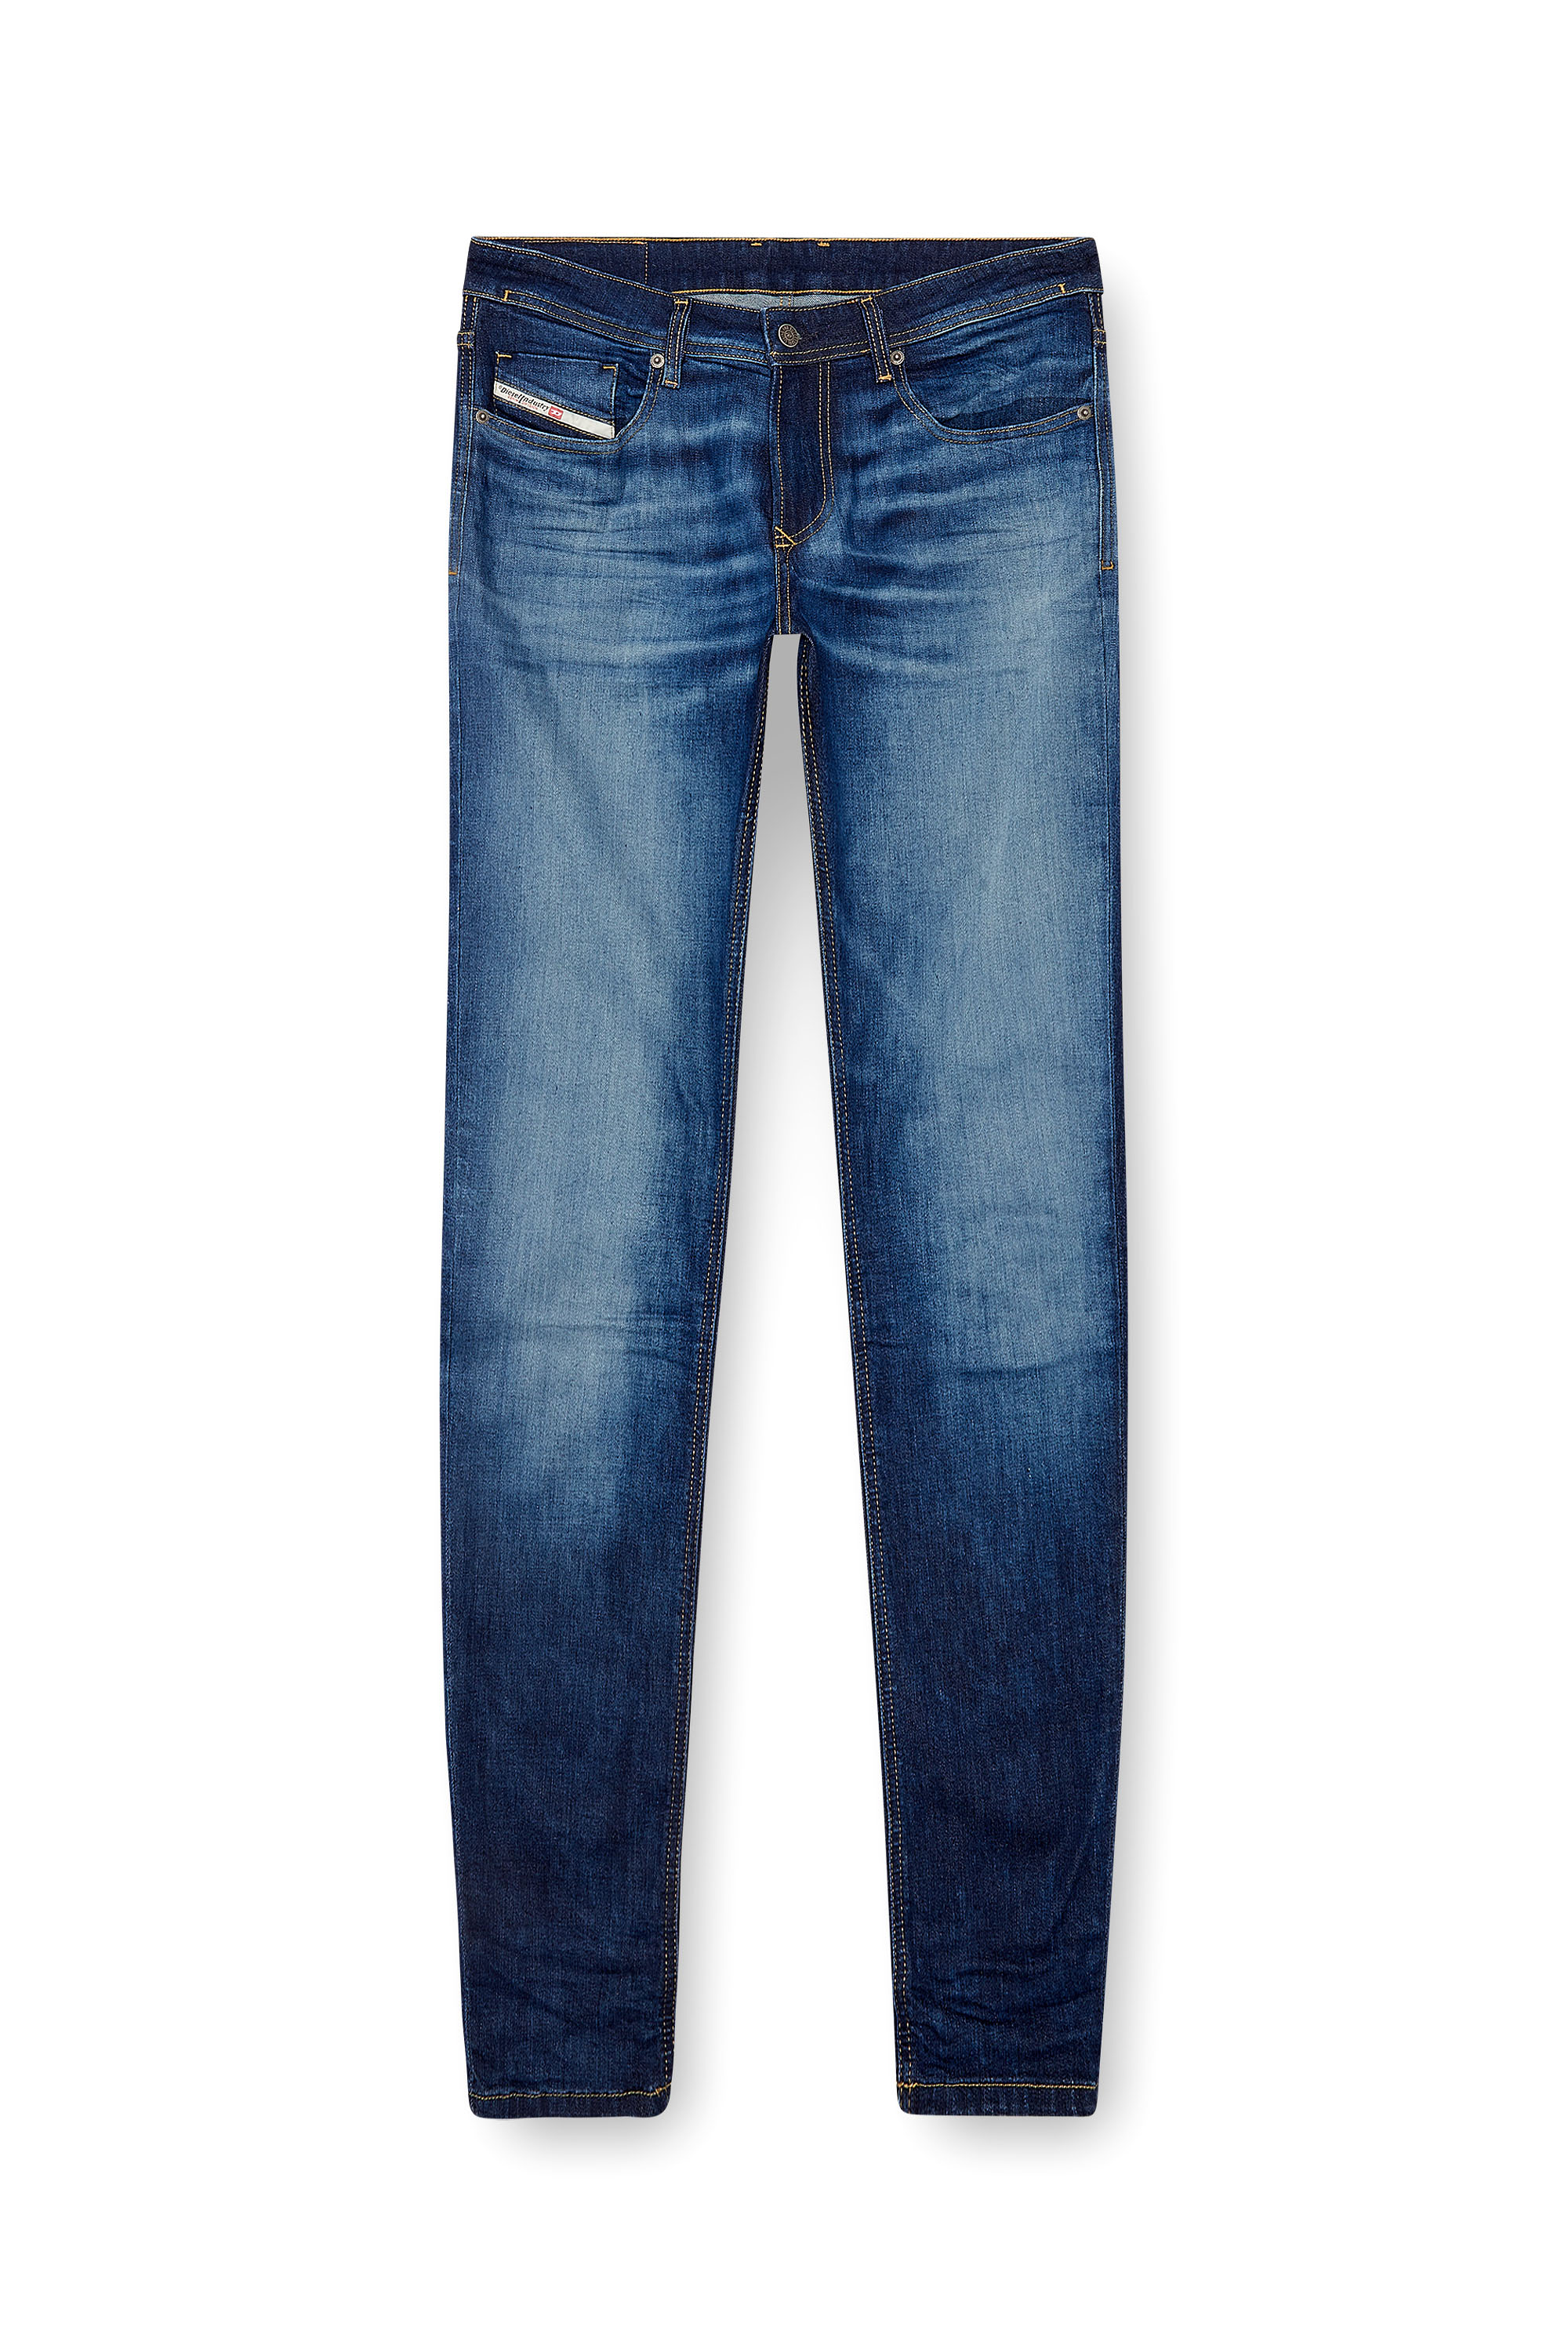 Diesel - Male Skinny Jeans 1979 Sleenker 0PFAV, Dark Blue - Image 5